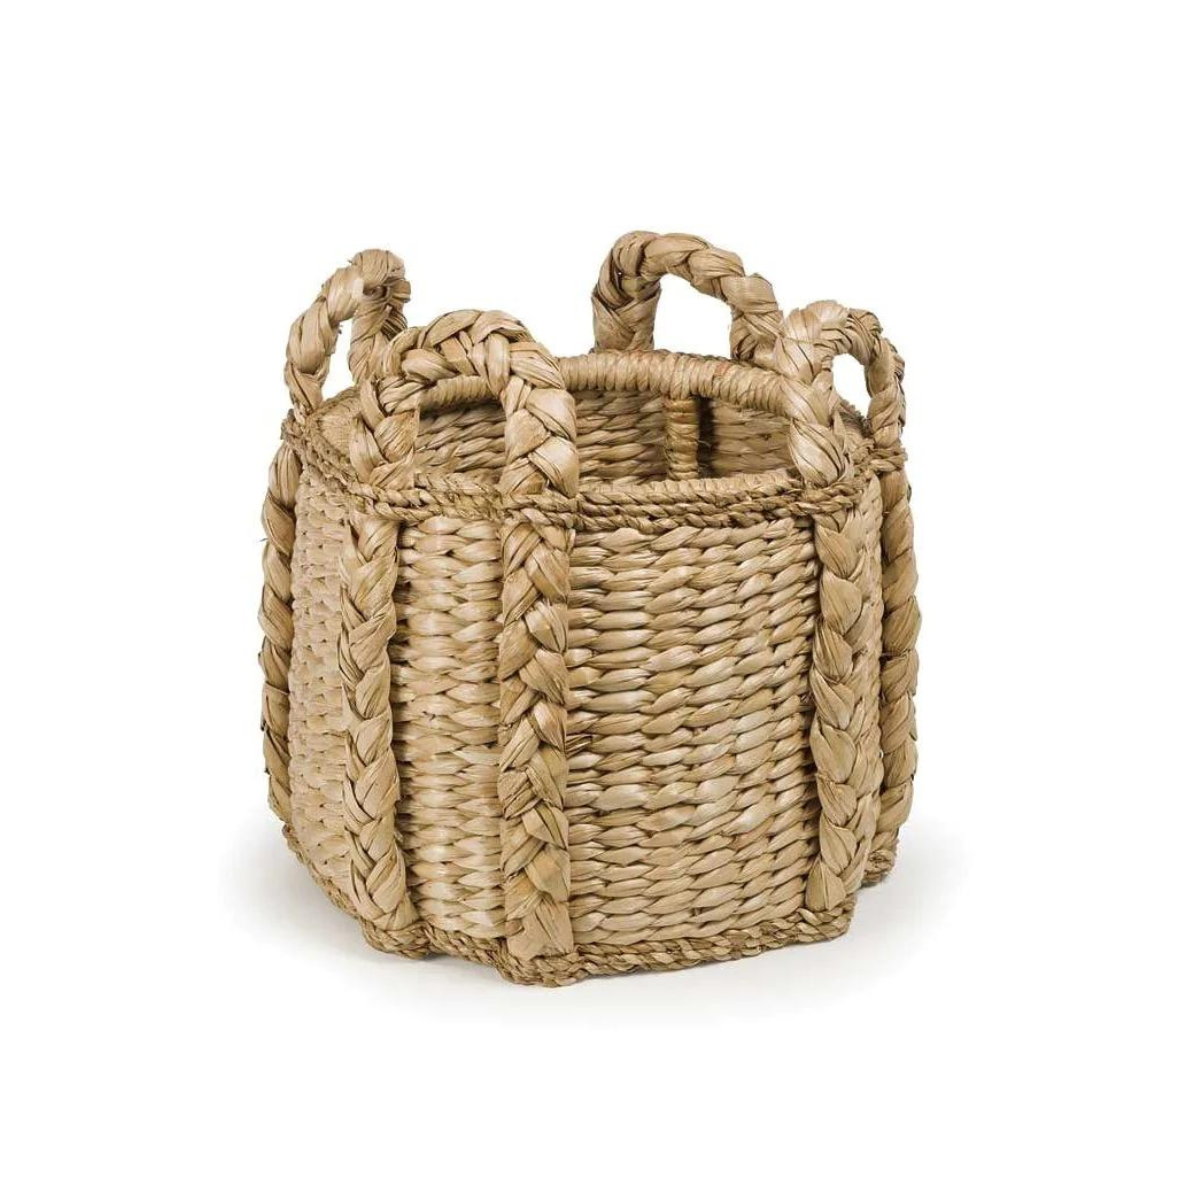 Sweater Weave Kindling Basket